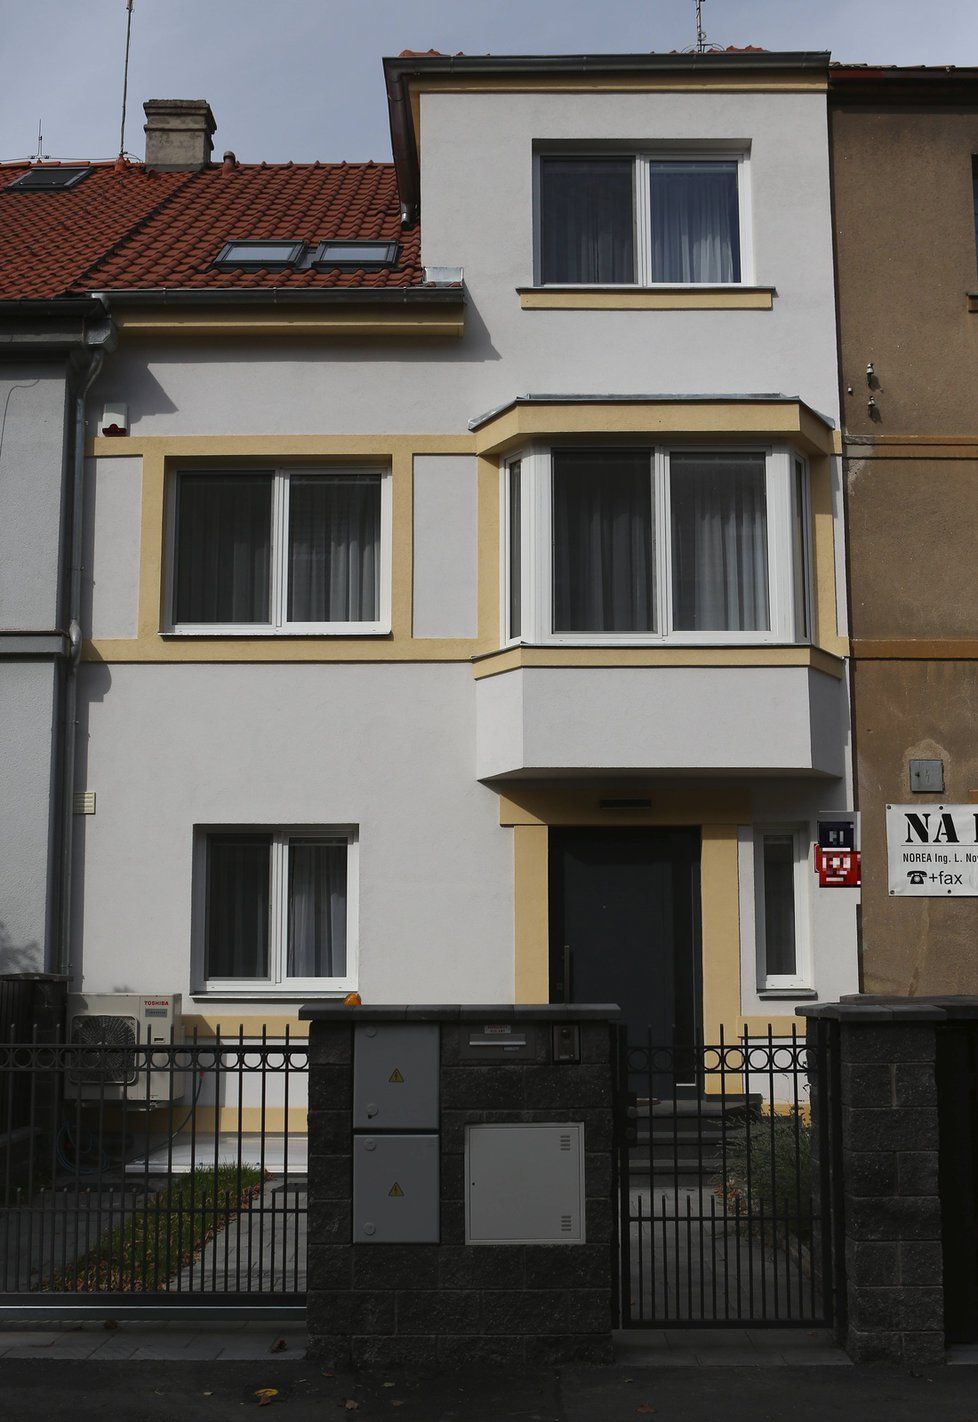 Praha 6: V nenápadné řadovce  rodina bydlí, mají v ní ale veškerý luxus.